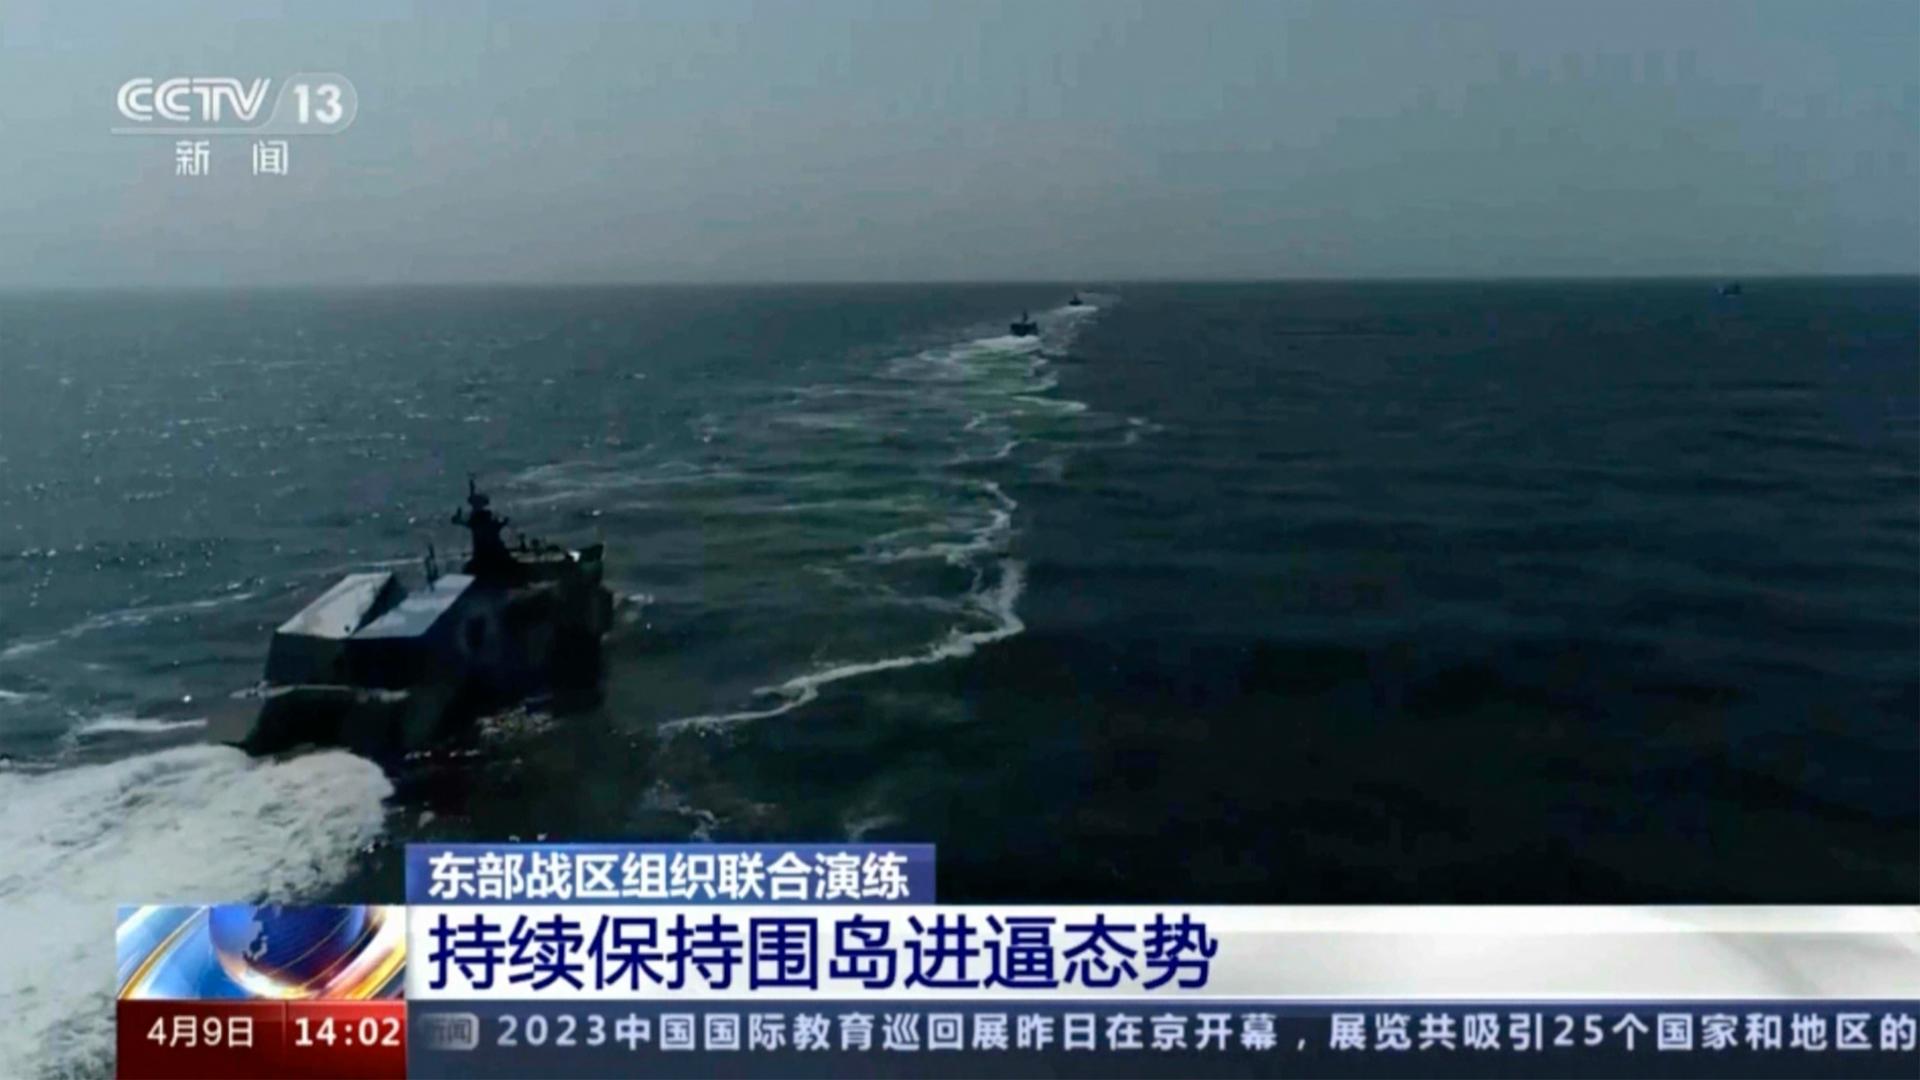 Der Ausschnitt aus einer Liveübertragung des chinesischen Staatsfernsehens zeigt mehrere chinesische Kriegsschiffe während des Manövers in der Straße von Taiwan.